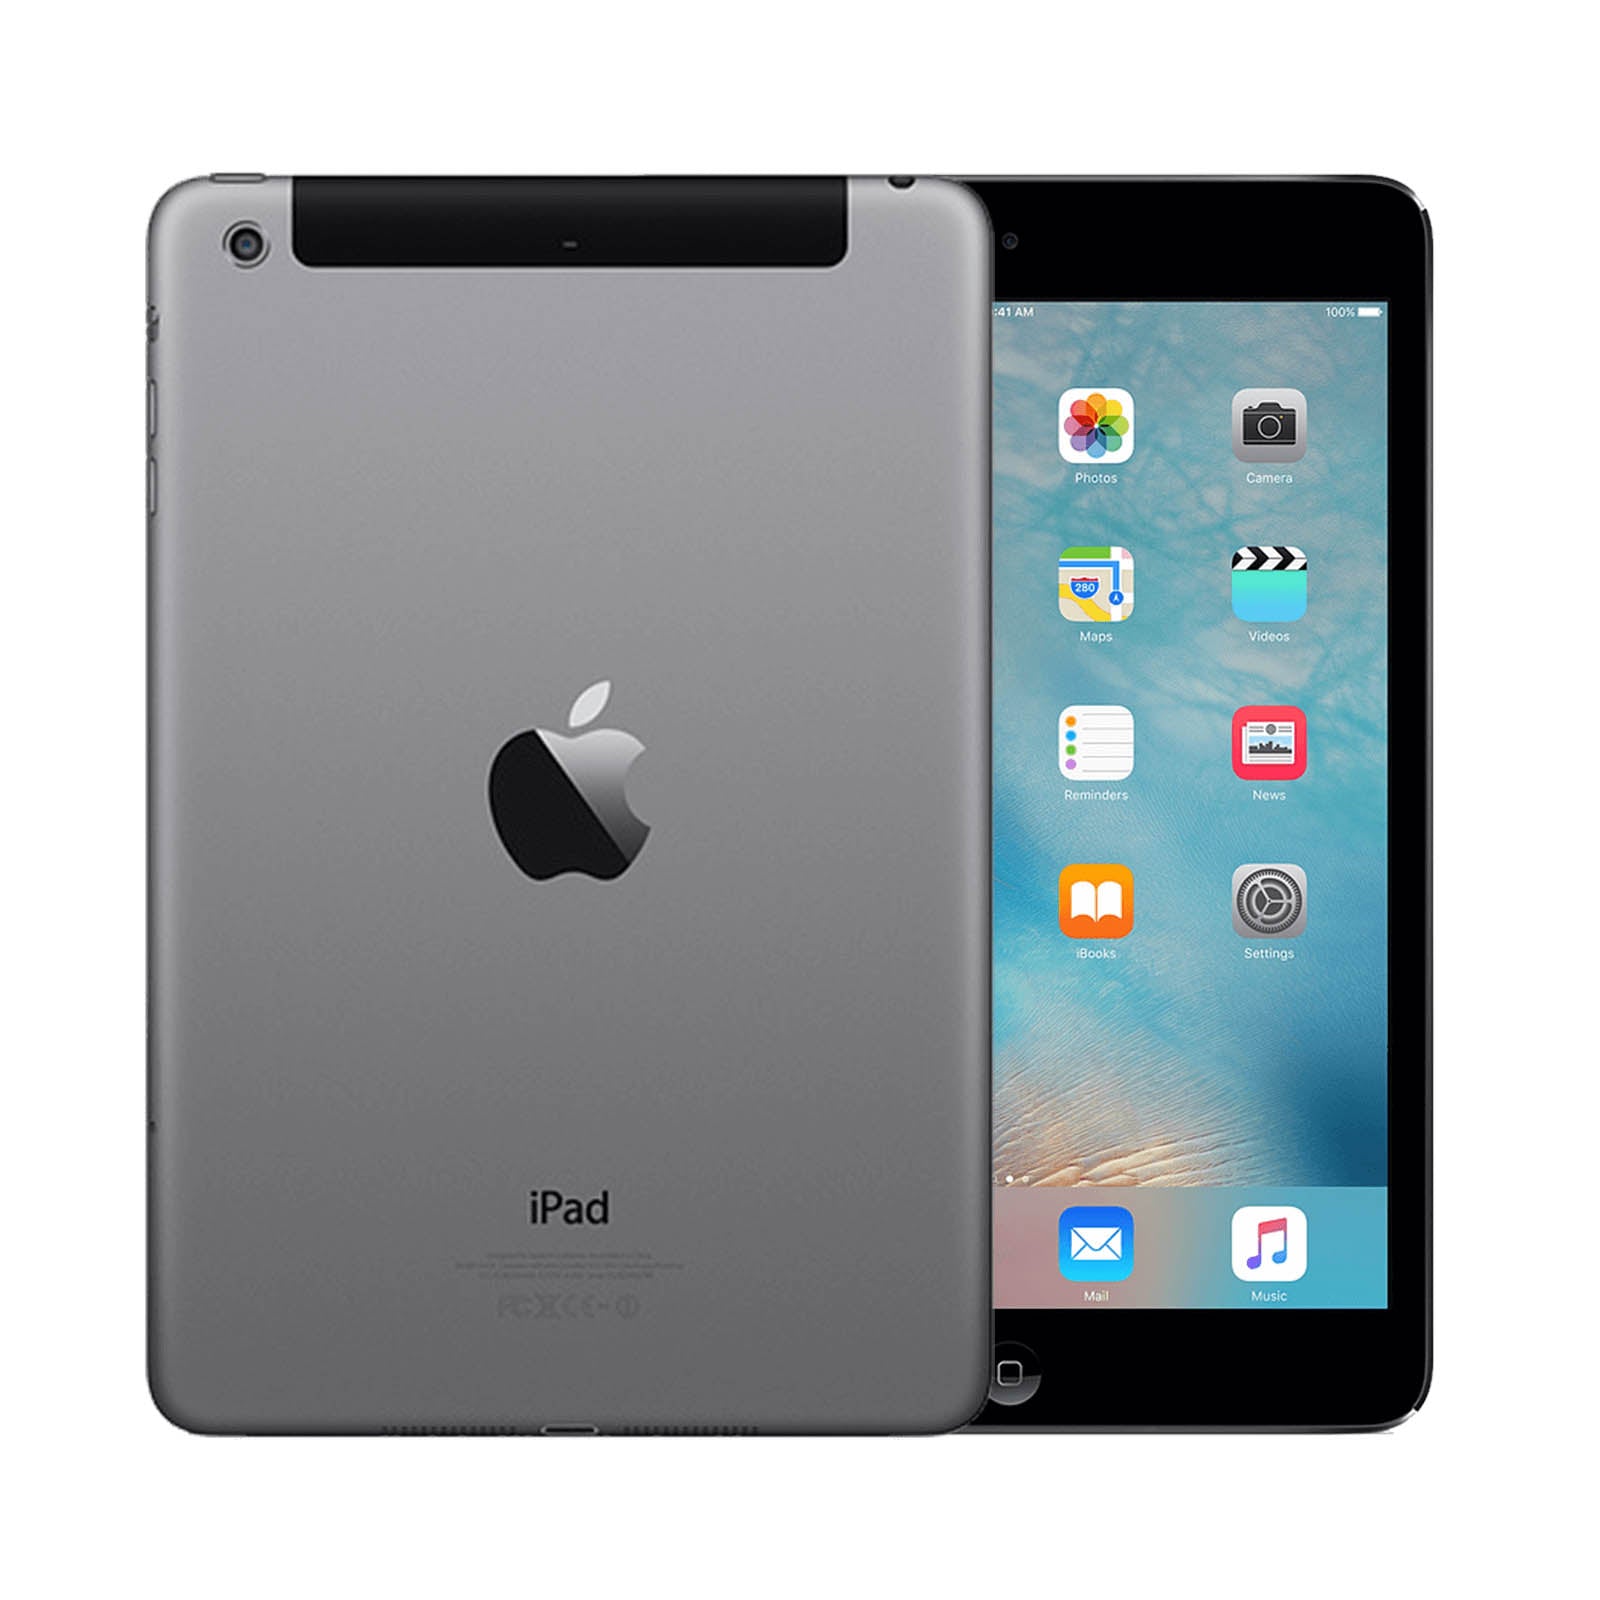 Apple iPad mini 2 128GB Black Fair - Unlocked